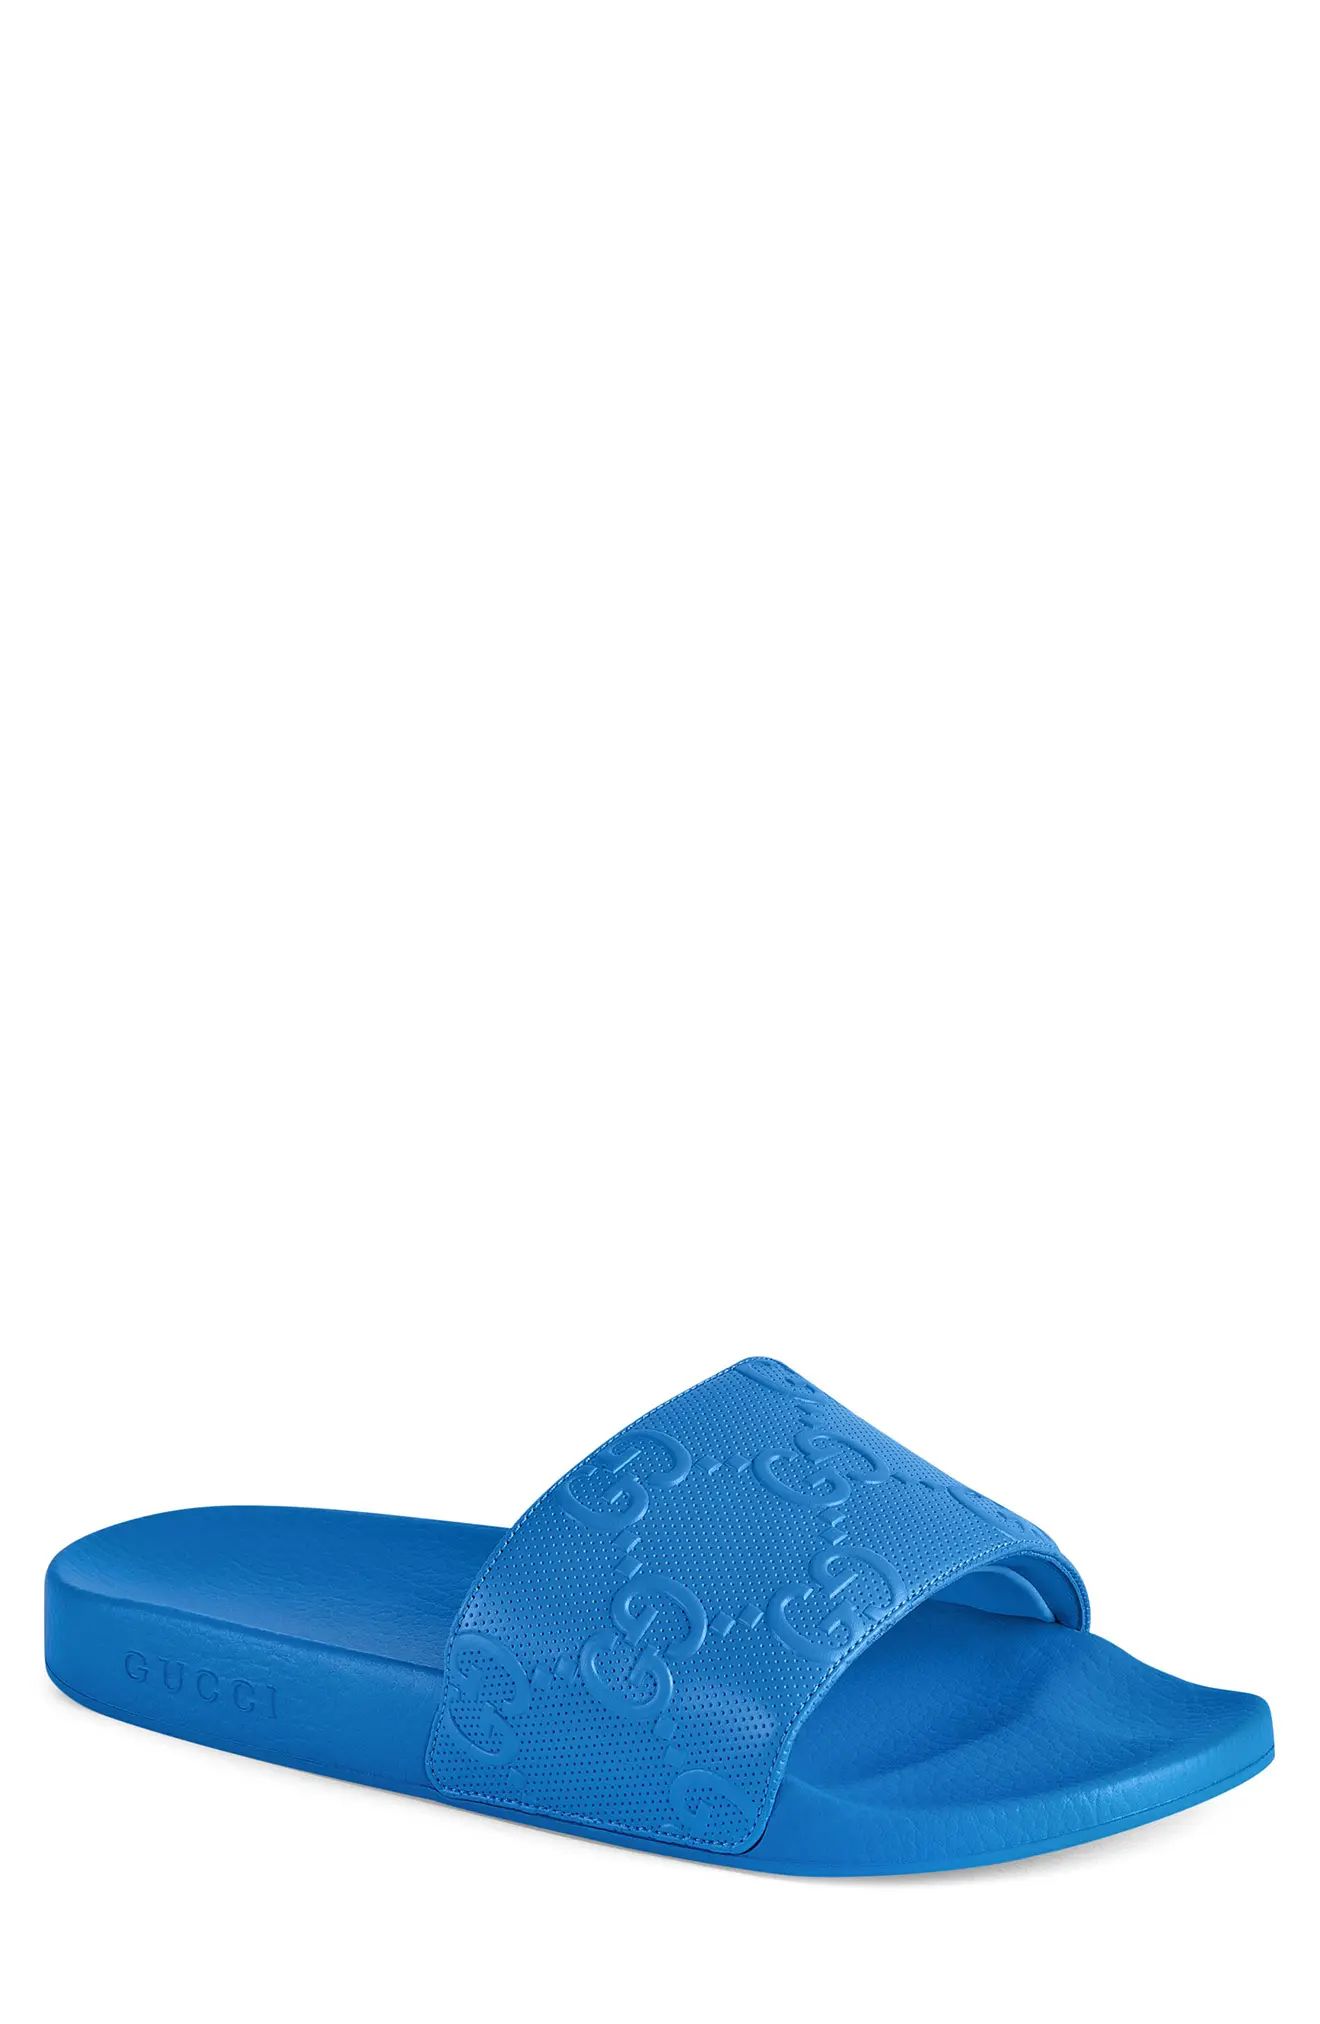 Gucci Pursuit Slide Sandal in Bright Splash at Nordstrom, Size 12Us | Nordstrom